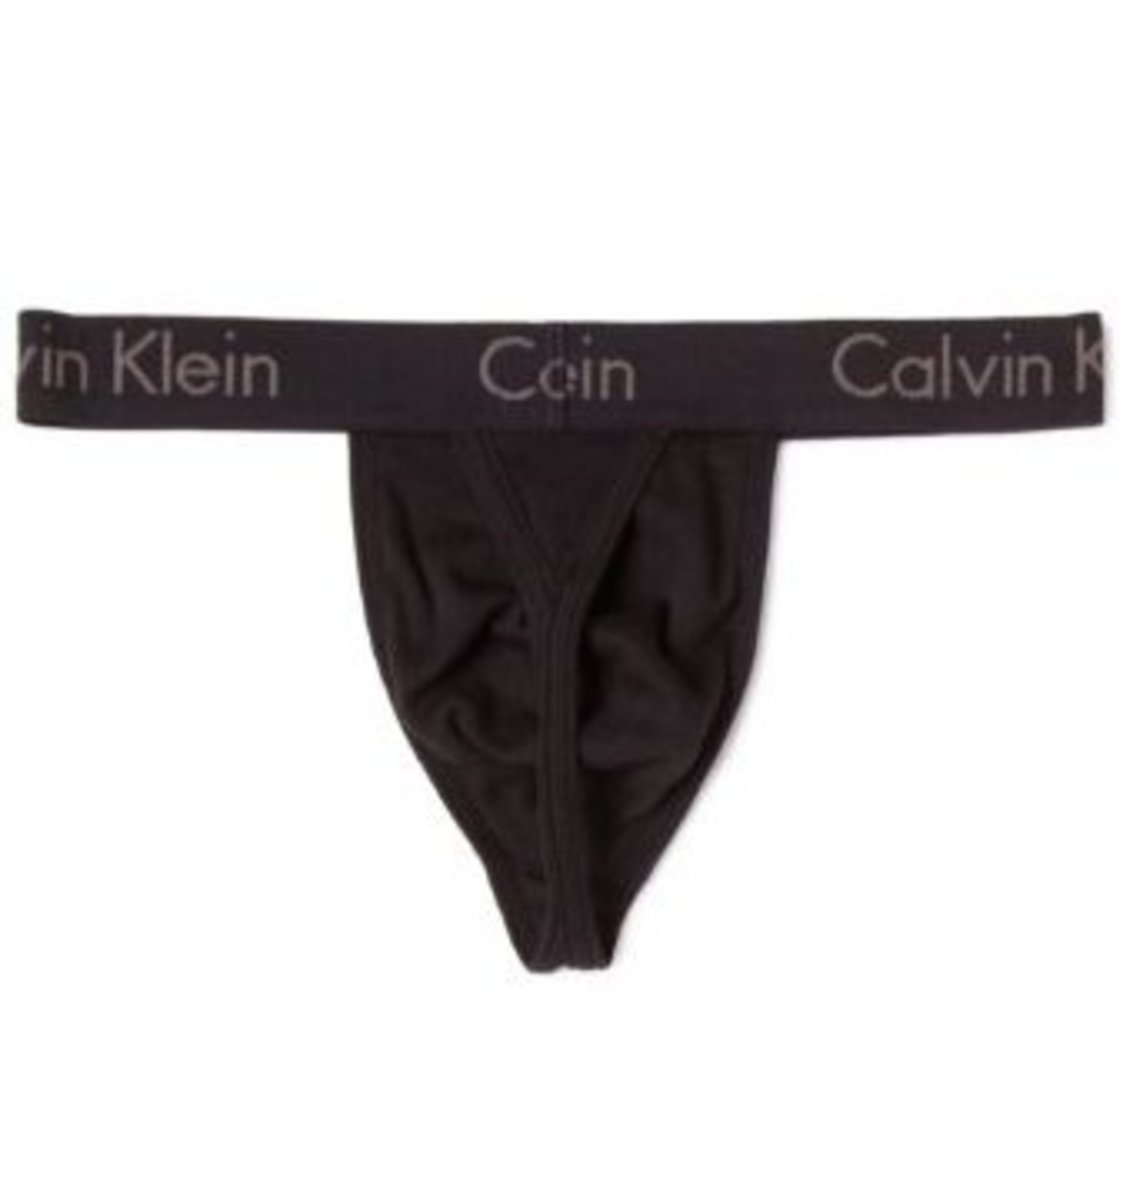 Calvin Klein men's body thong